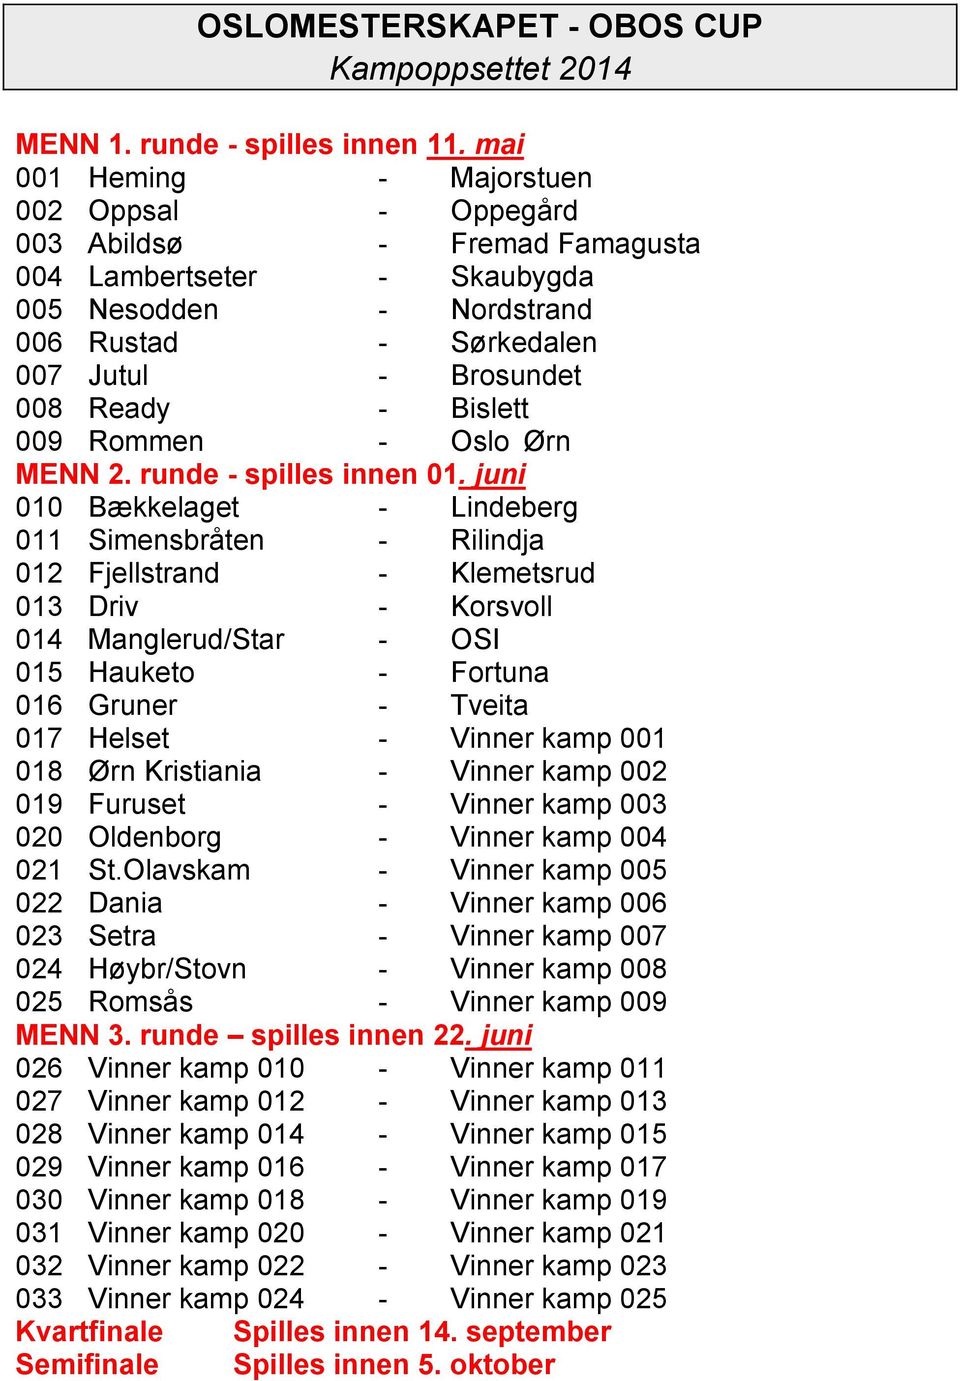 Bislett 009 Rommen - Oslo Ørn MENN 2. runde - spilles innen 01.